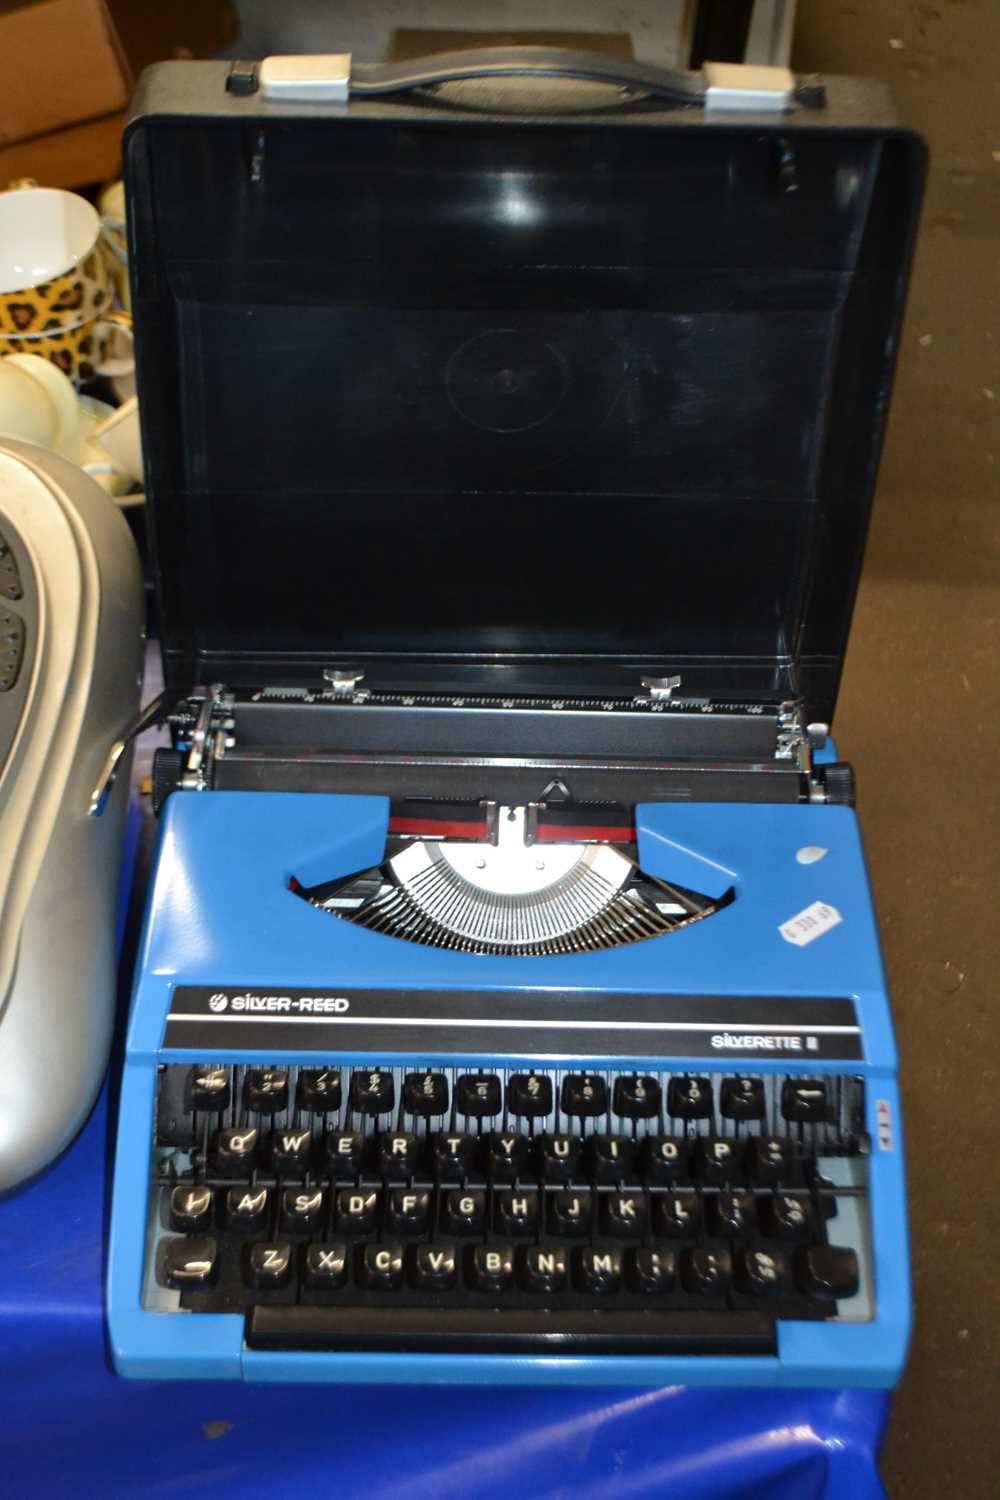 Silveread Silverette II typewriter